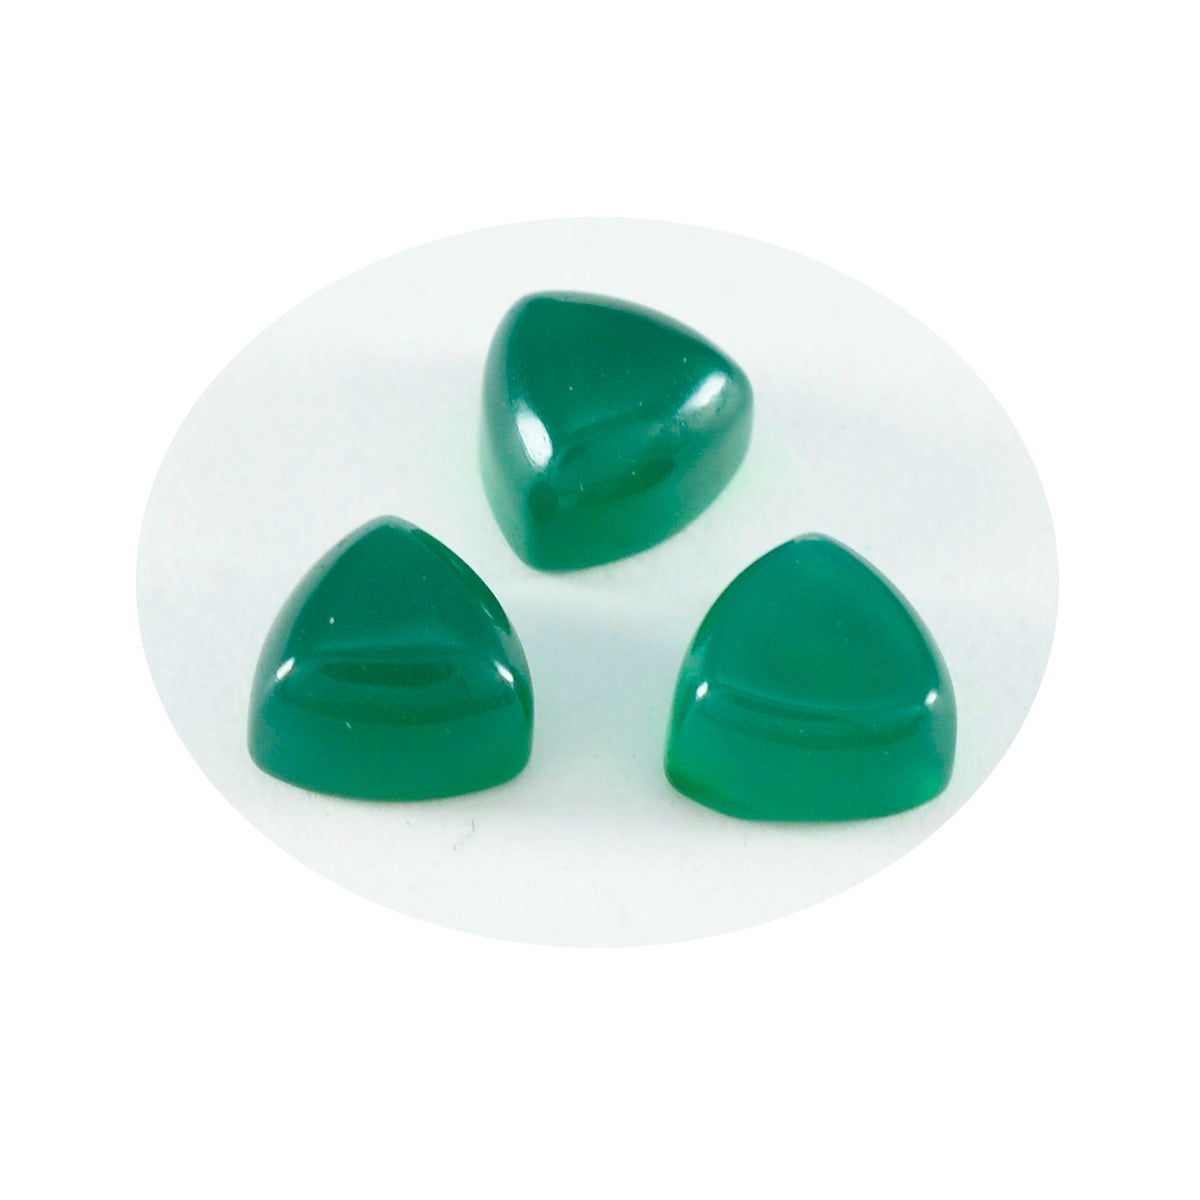 riyogems 1 шт., зеленый оникс, кабошон 12x12 мм, форма триллиона, превосходное качество, свободный драгоценный камень